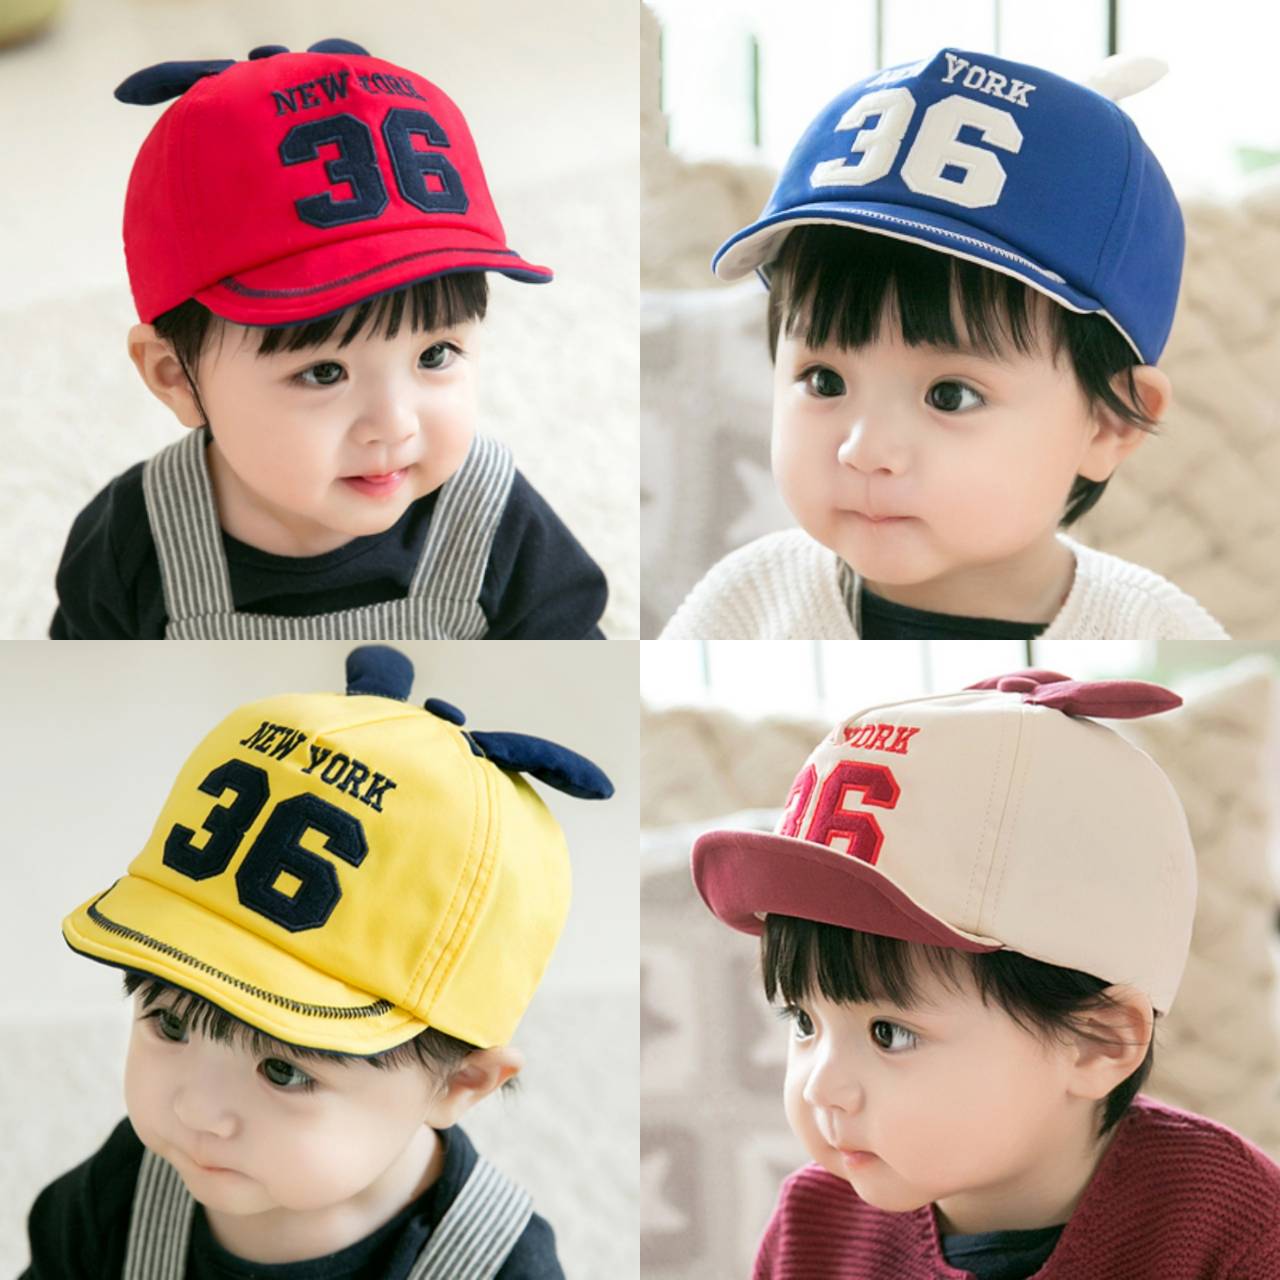 ☆พร้อมส่ง☆หมวกเด็ก 4เดือน-2ปี รอบหัว:48-50 cm.หมวกเด็กแรกเกิด หมวกเด็กอ่อน หมวกแก๊ปเด็ก หมวกเด็กชาย หมวกแก็ปปีกอ่อน หมวกแฟชั่น ปัก NEW YORK 36